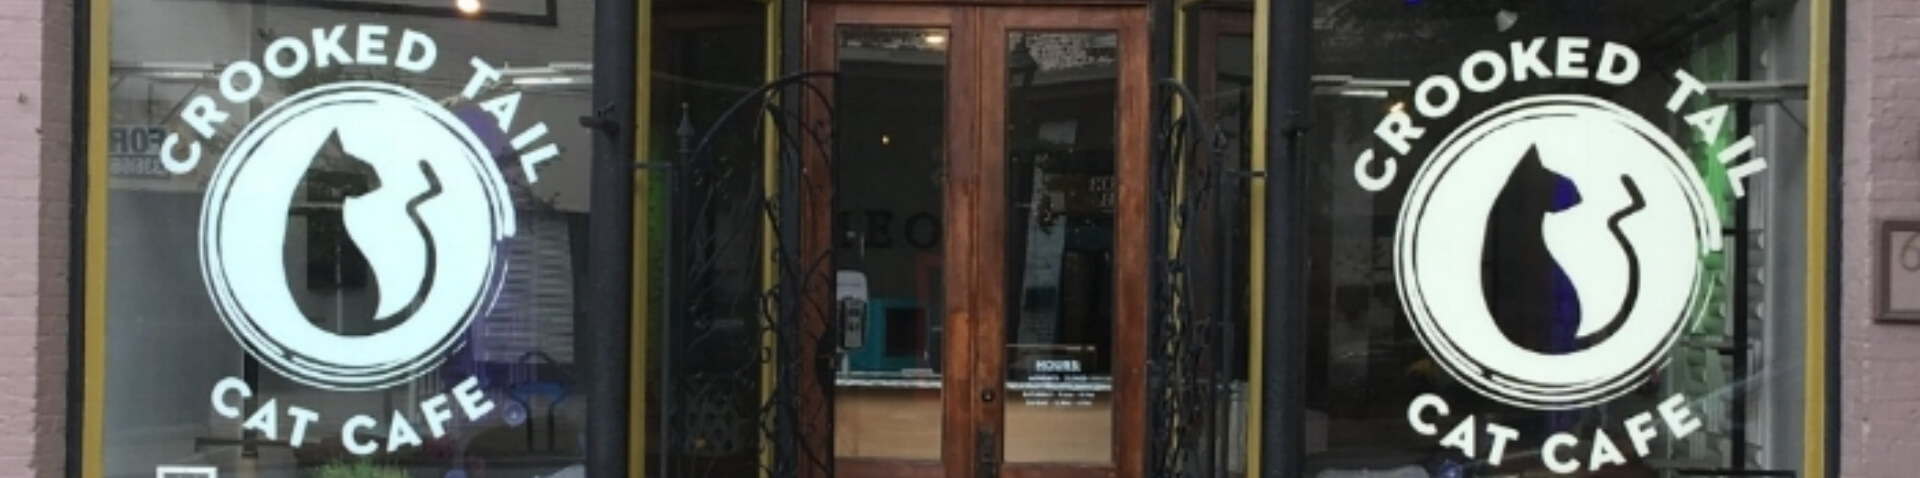 Cat café entrance